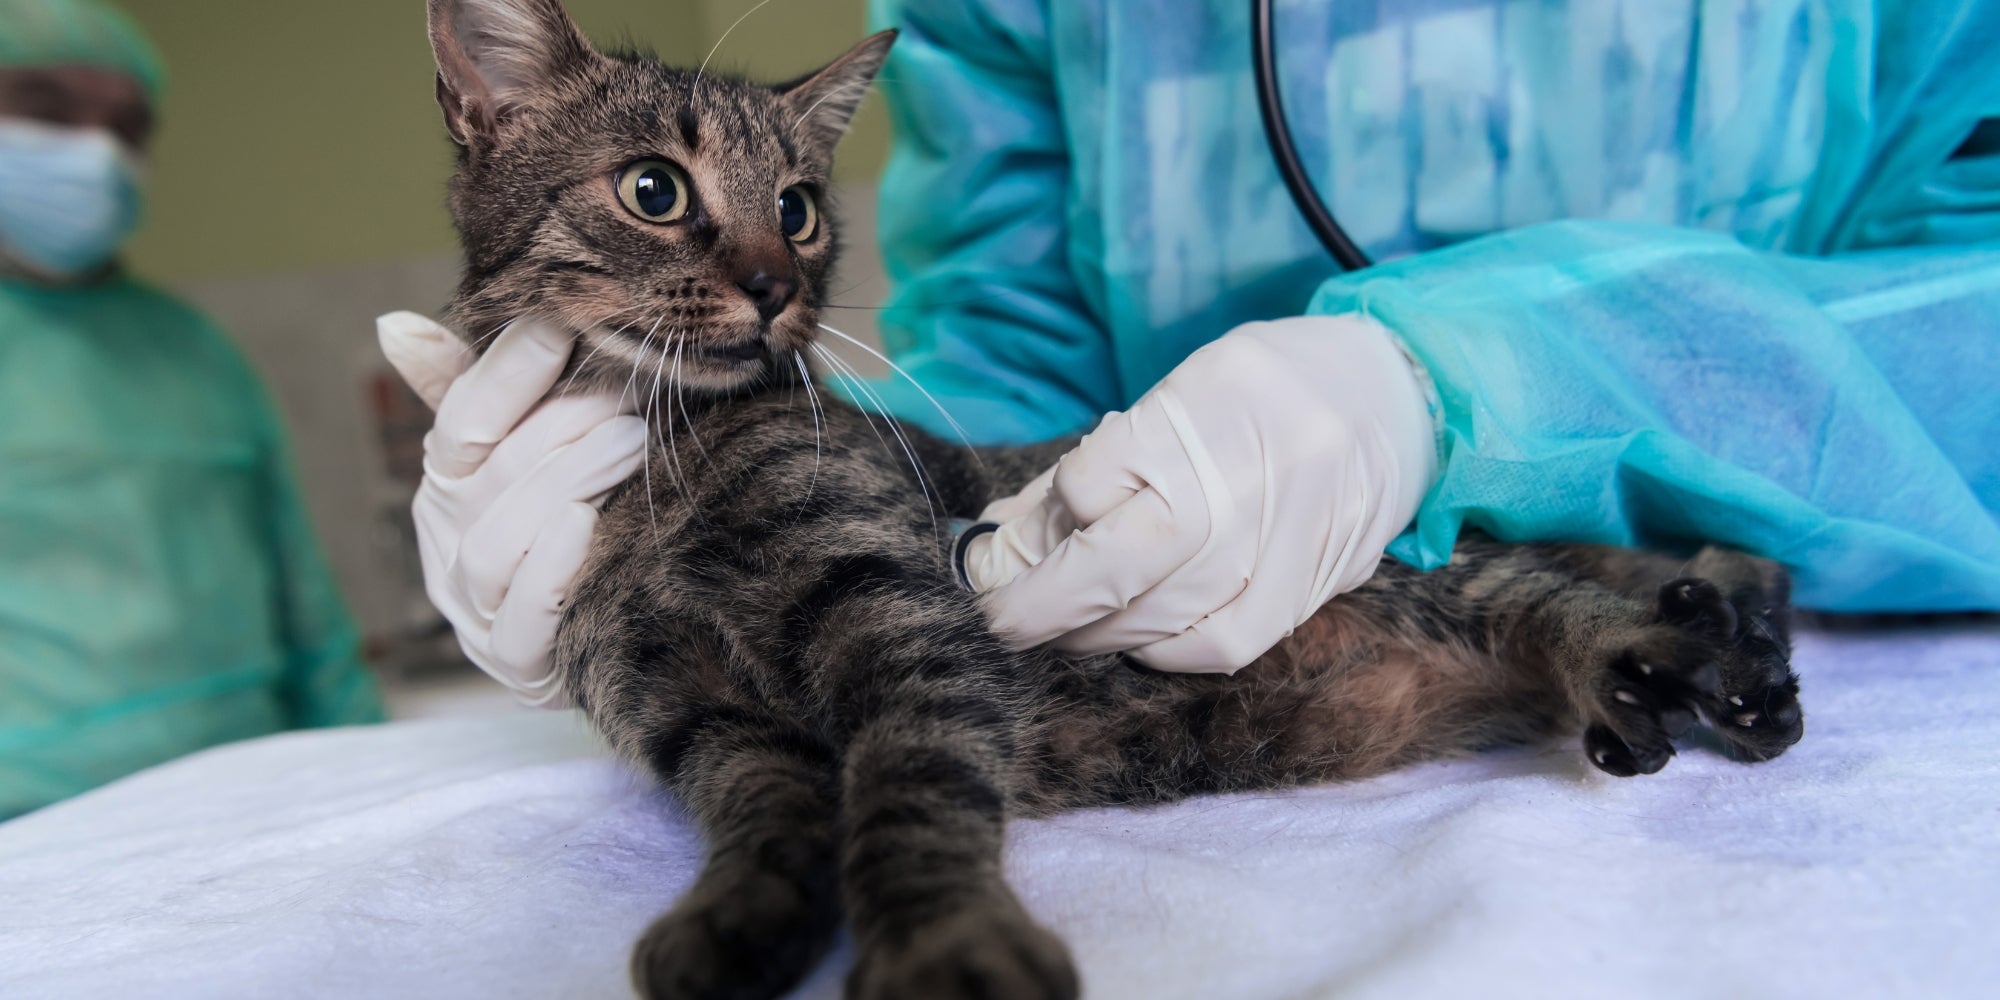 Equipo veterinario para tratar gatos enfermos, Mantener el concepto de salud animal, Hospital de animales